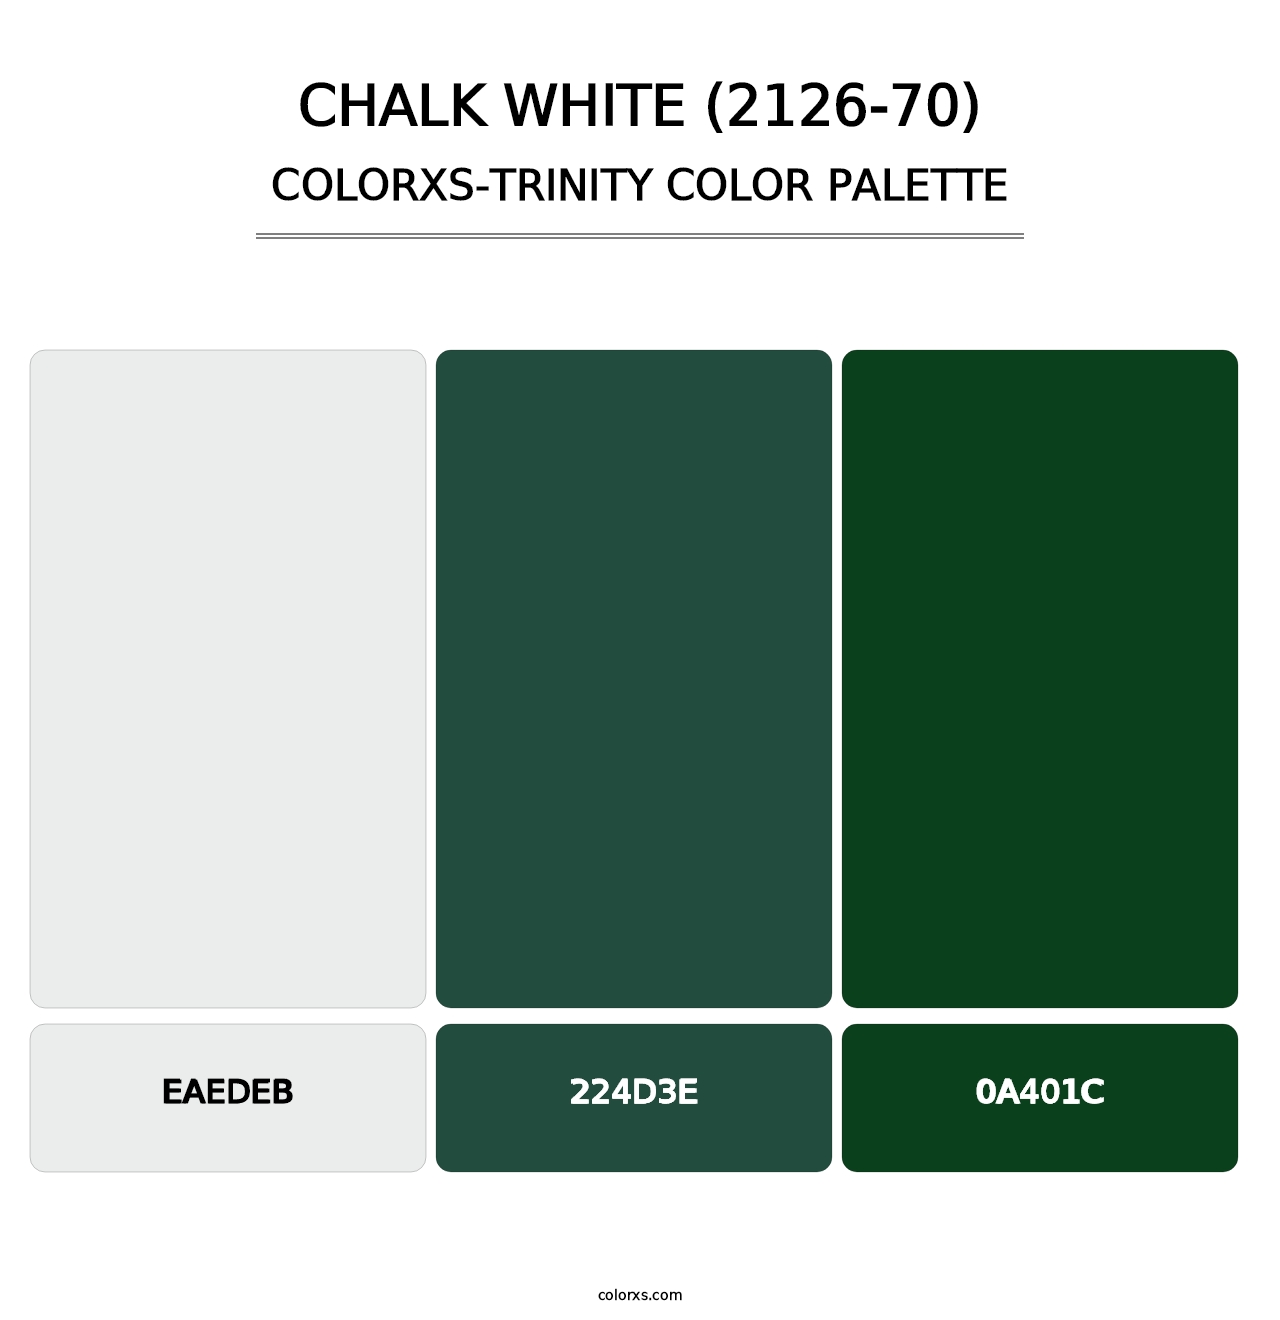 Chalk White (2126-70) - Colorxs Trinity Palette